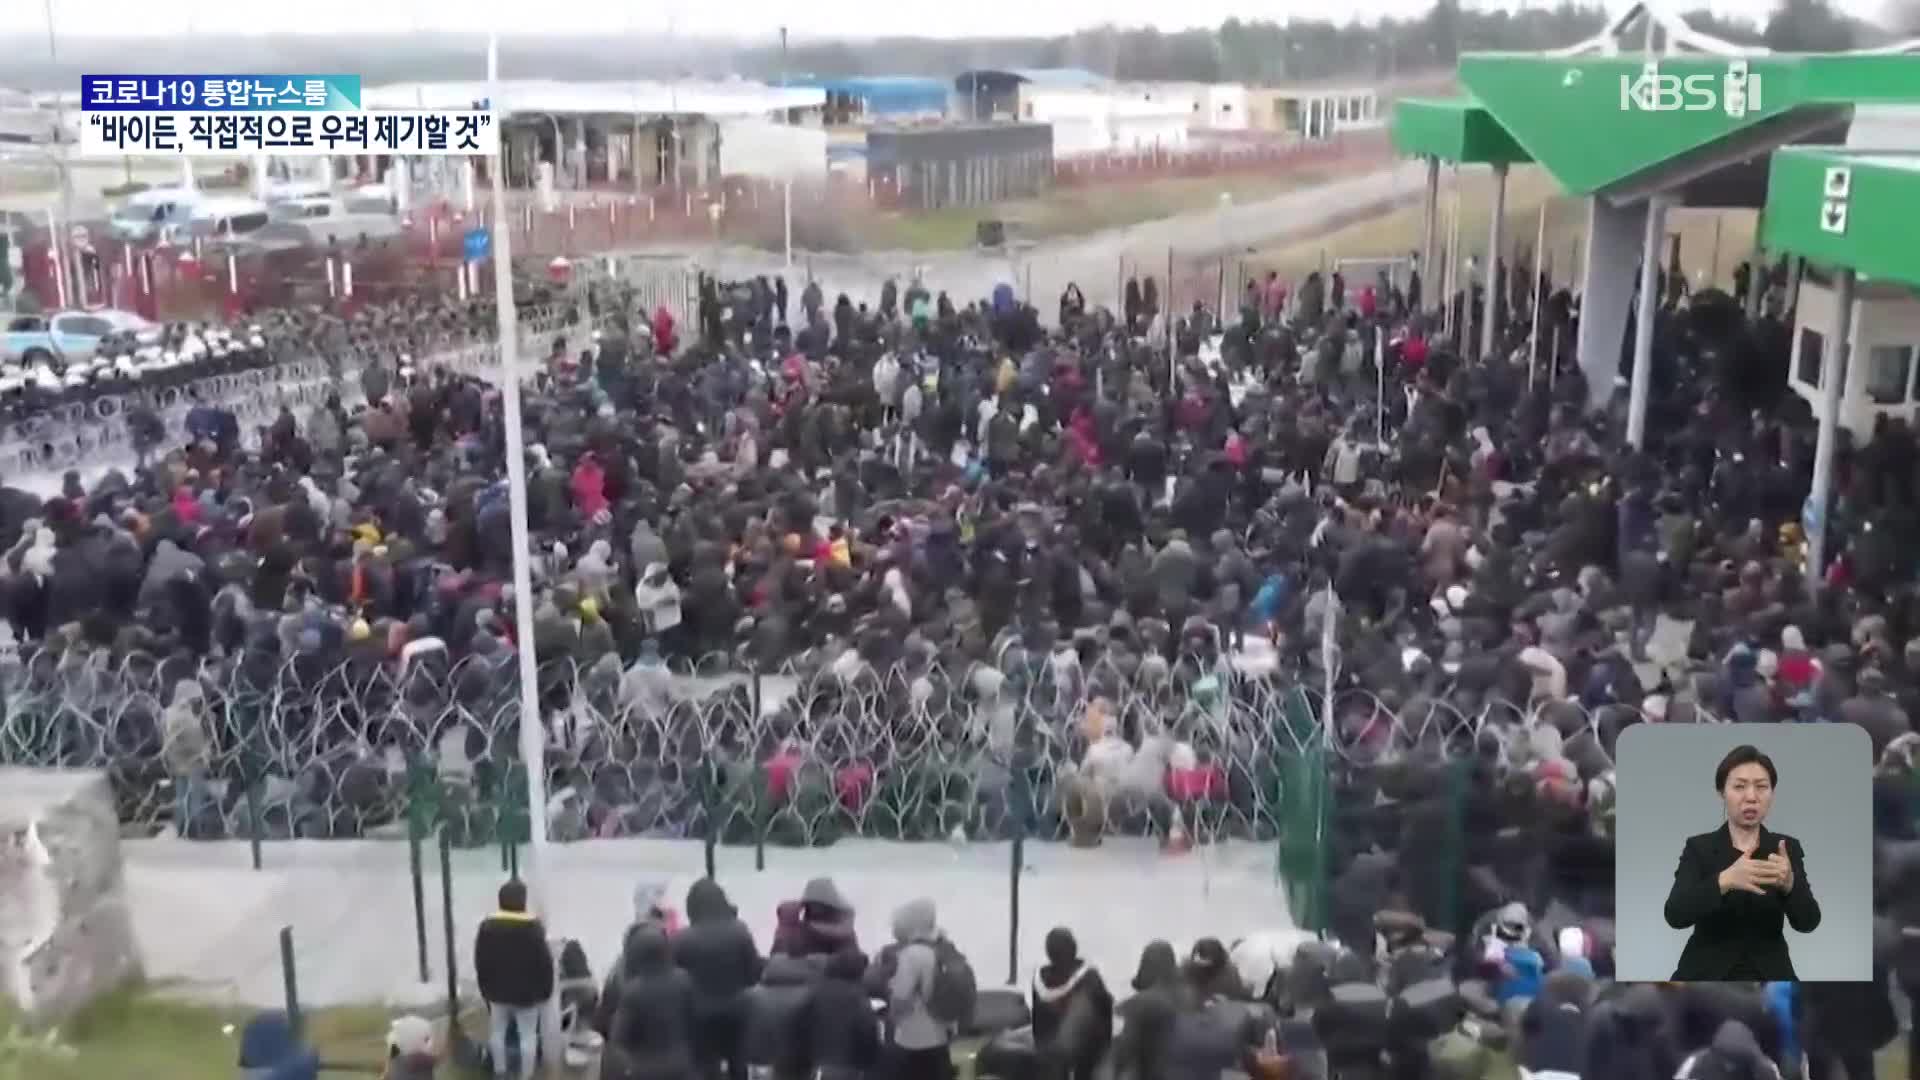 ‘개방’ 소문에 국경검문소 몰린 난민들…폴란드 국경 긴장고조